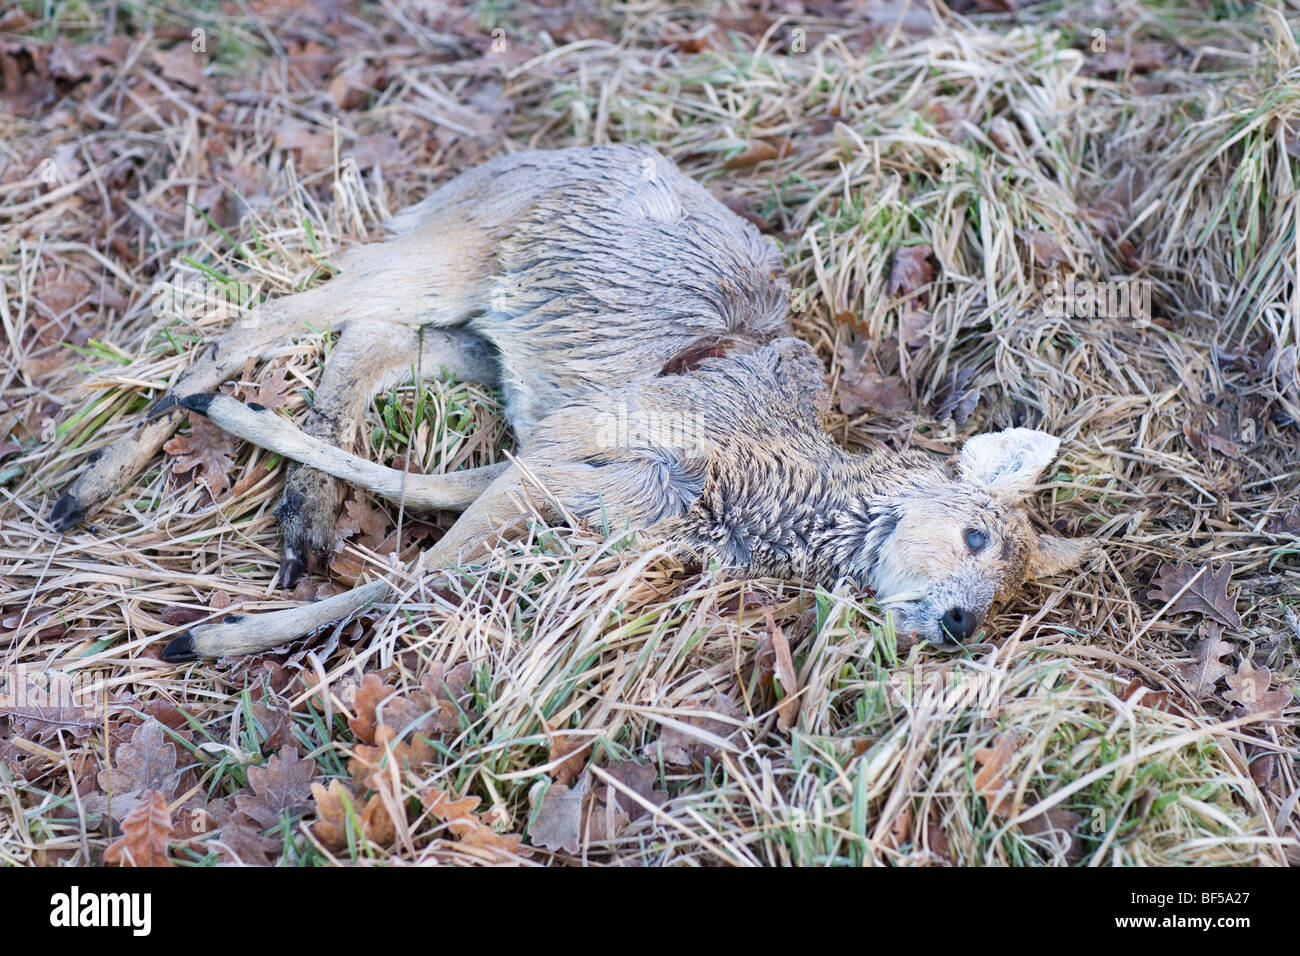 Acqua cinese Deer (Hydropotes inermis). La morte dovuta al freddo inverno, ipotermia, e la fame. Broadland, Norfolk, Inghilterra. Regno Unito Foto Stock